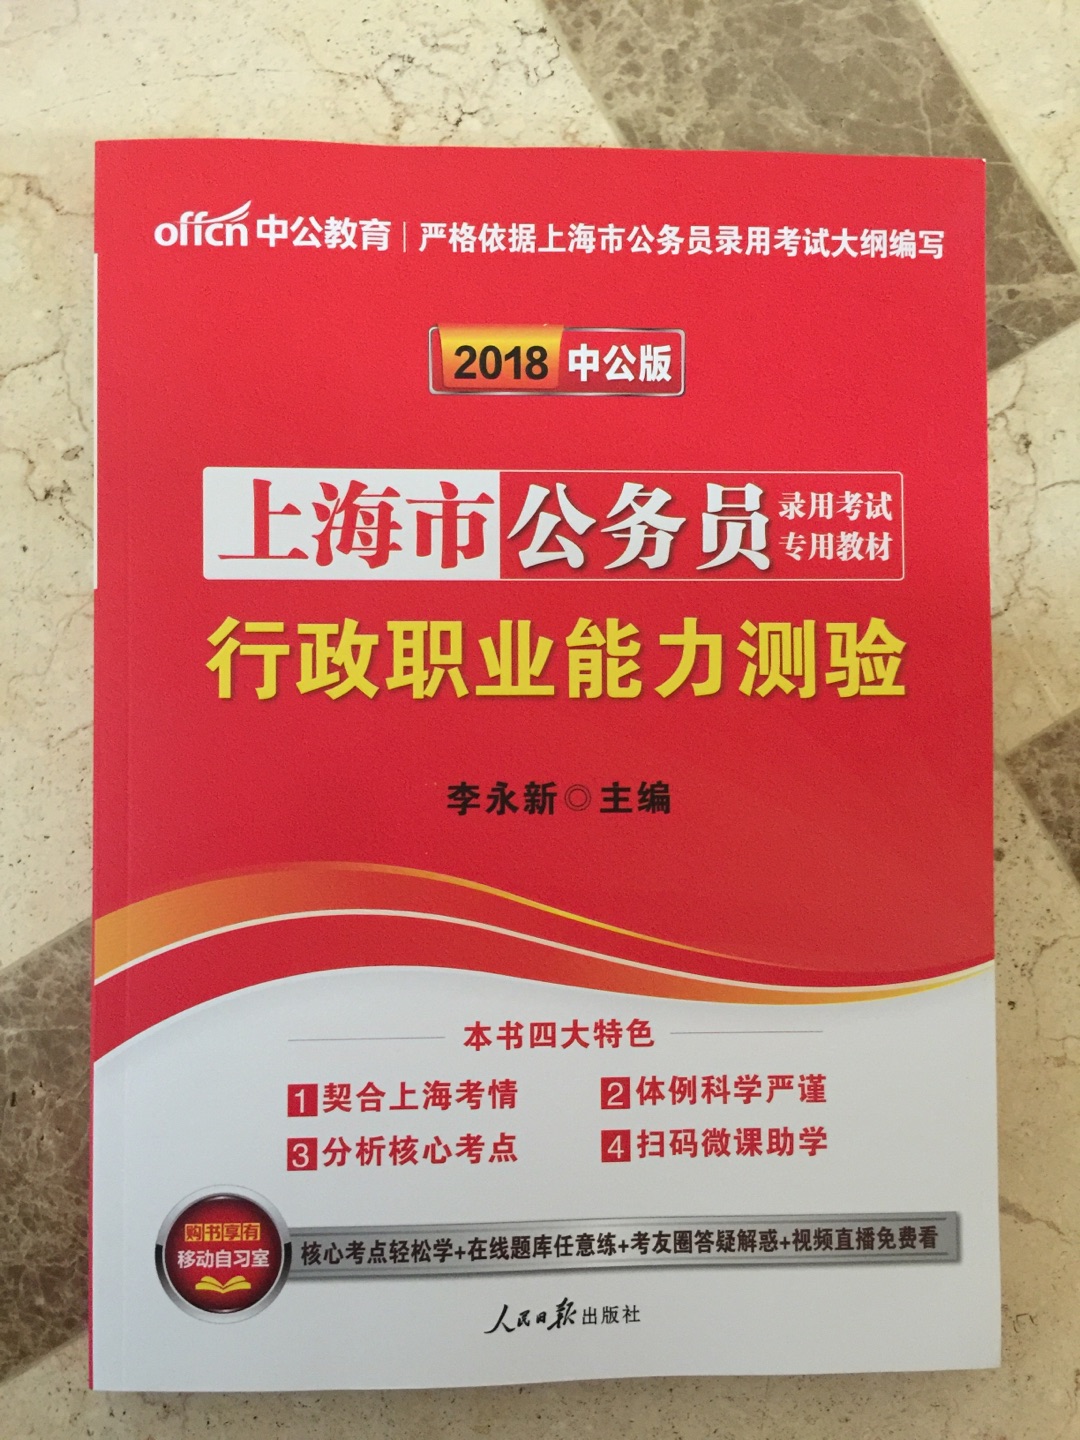 上海市公务员录用考试专用教材行政职业能力测验 蛮有用的